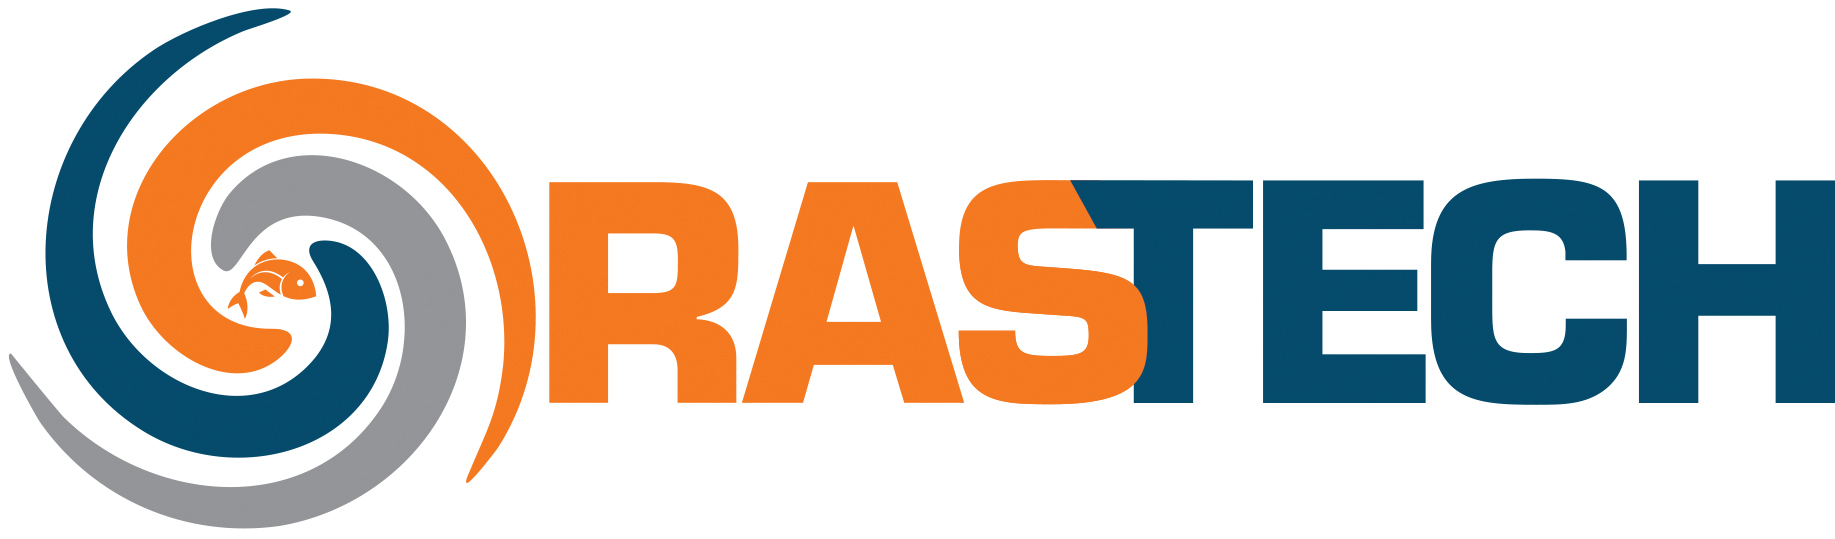 Rastech_logo.jpg